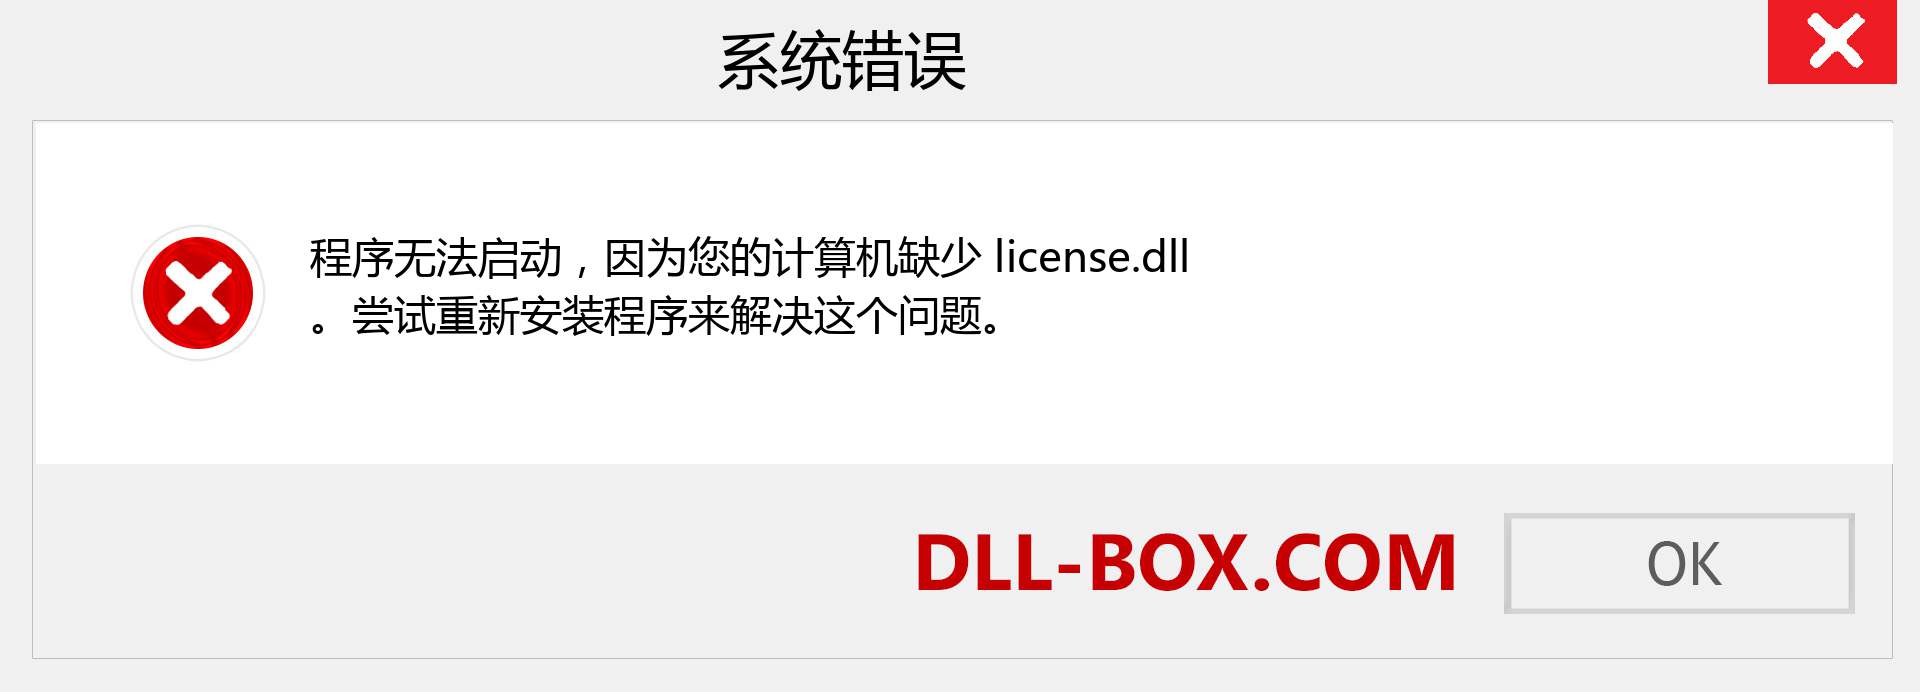 license.dll 文件丢失？。 适用于 Windows 7、8、10 的下载 - 修复 Windows、照片、图像上的 license dll 丢失错误